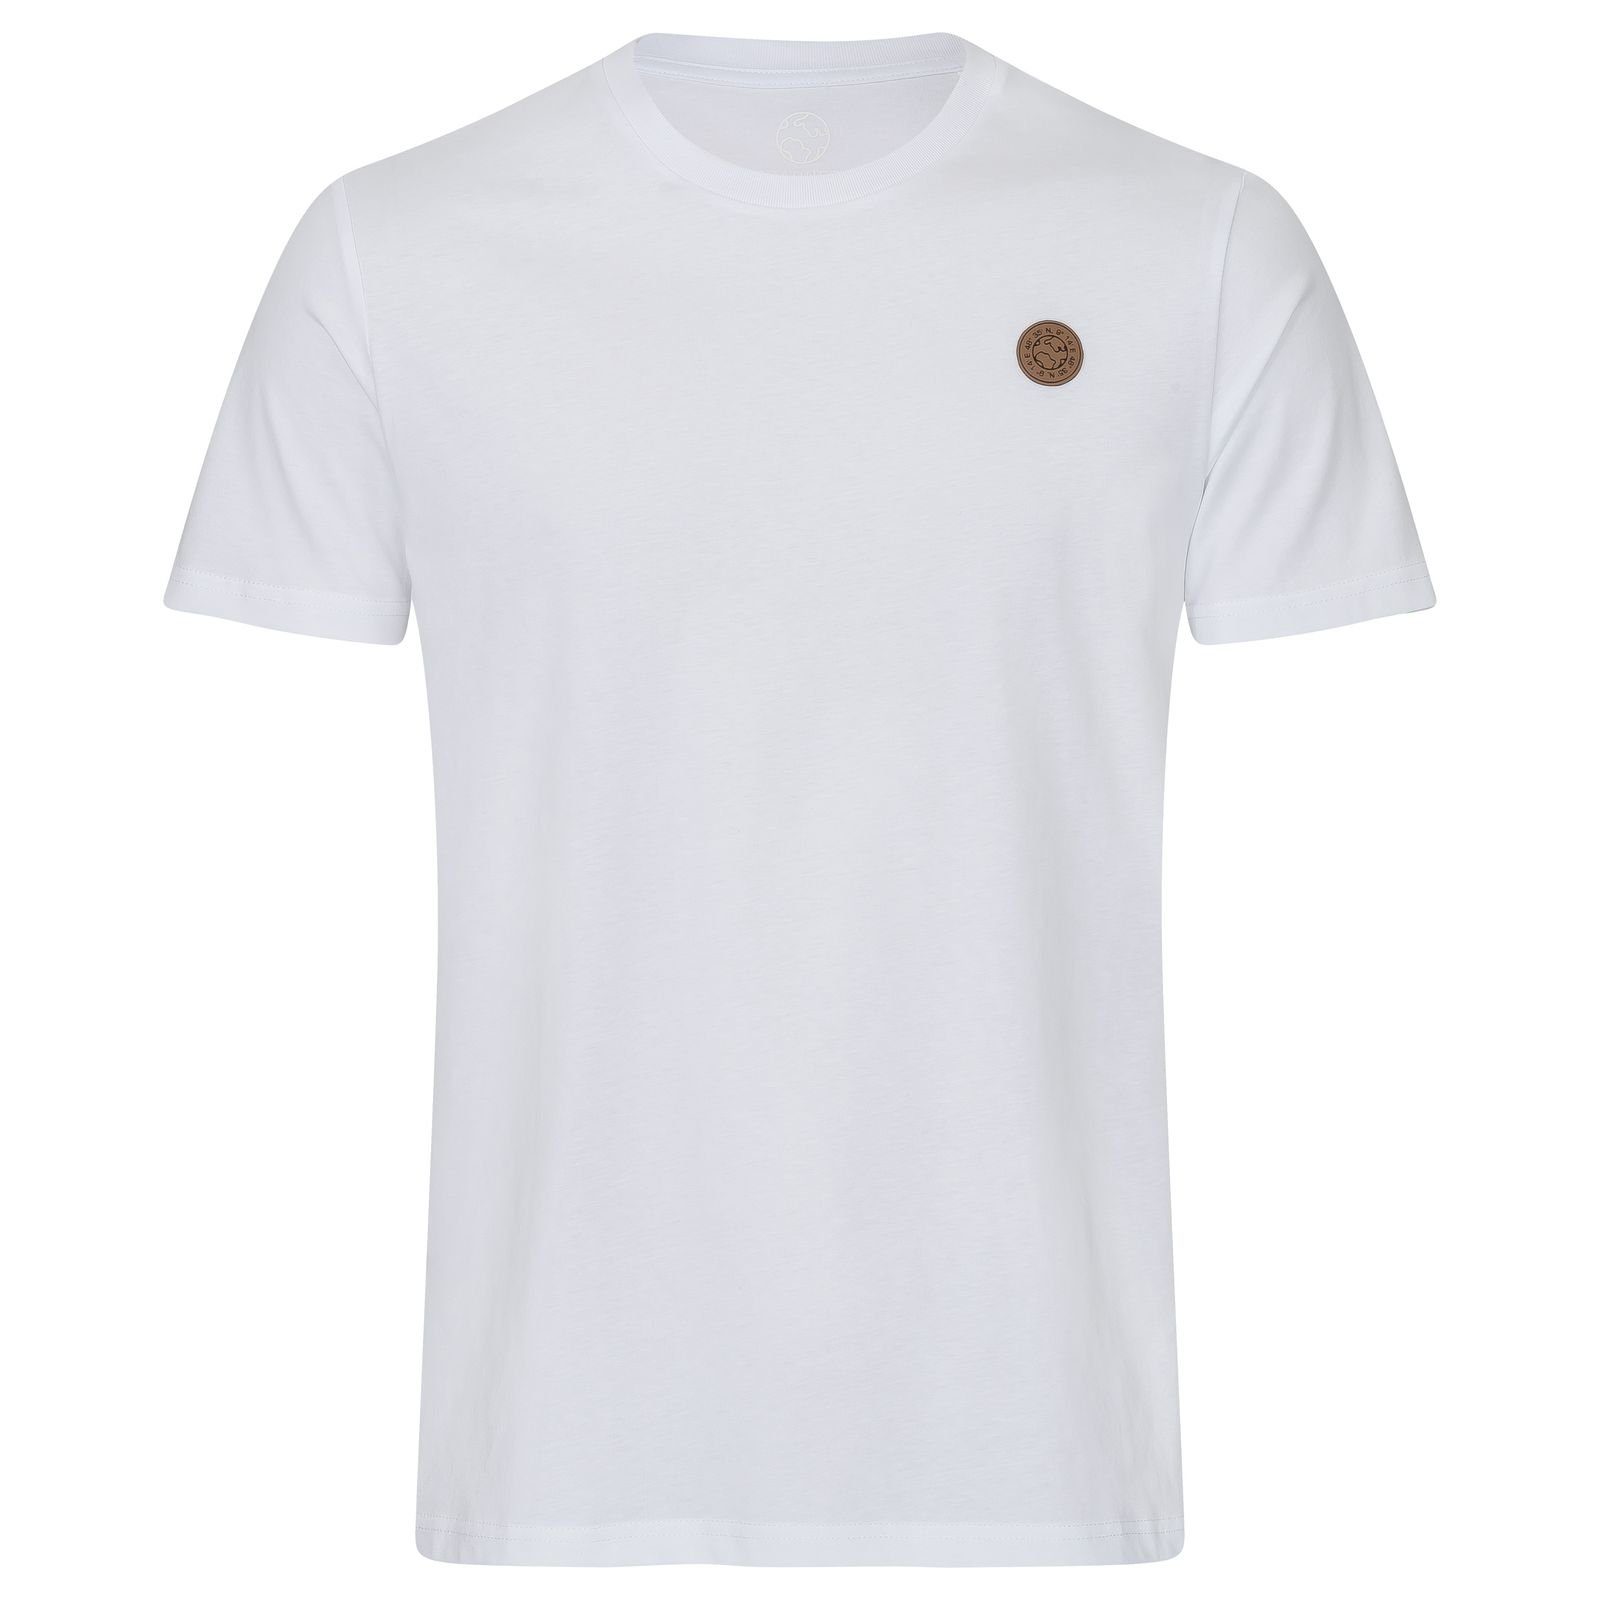 Gradnetz T-Shirt weiß leather 100% fair unisex nachhaltig & basic Biobaumwolle